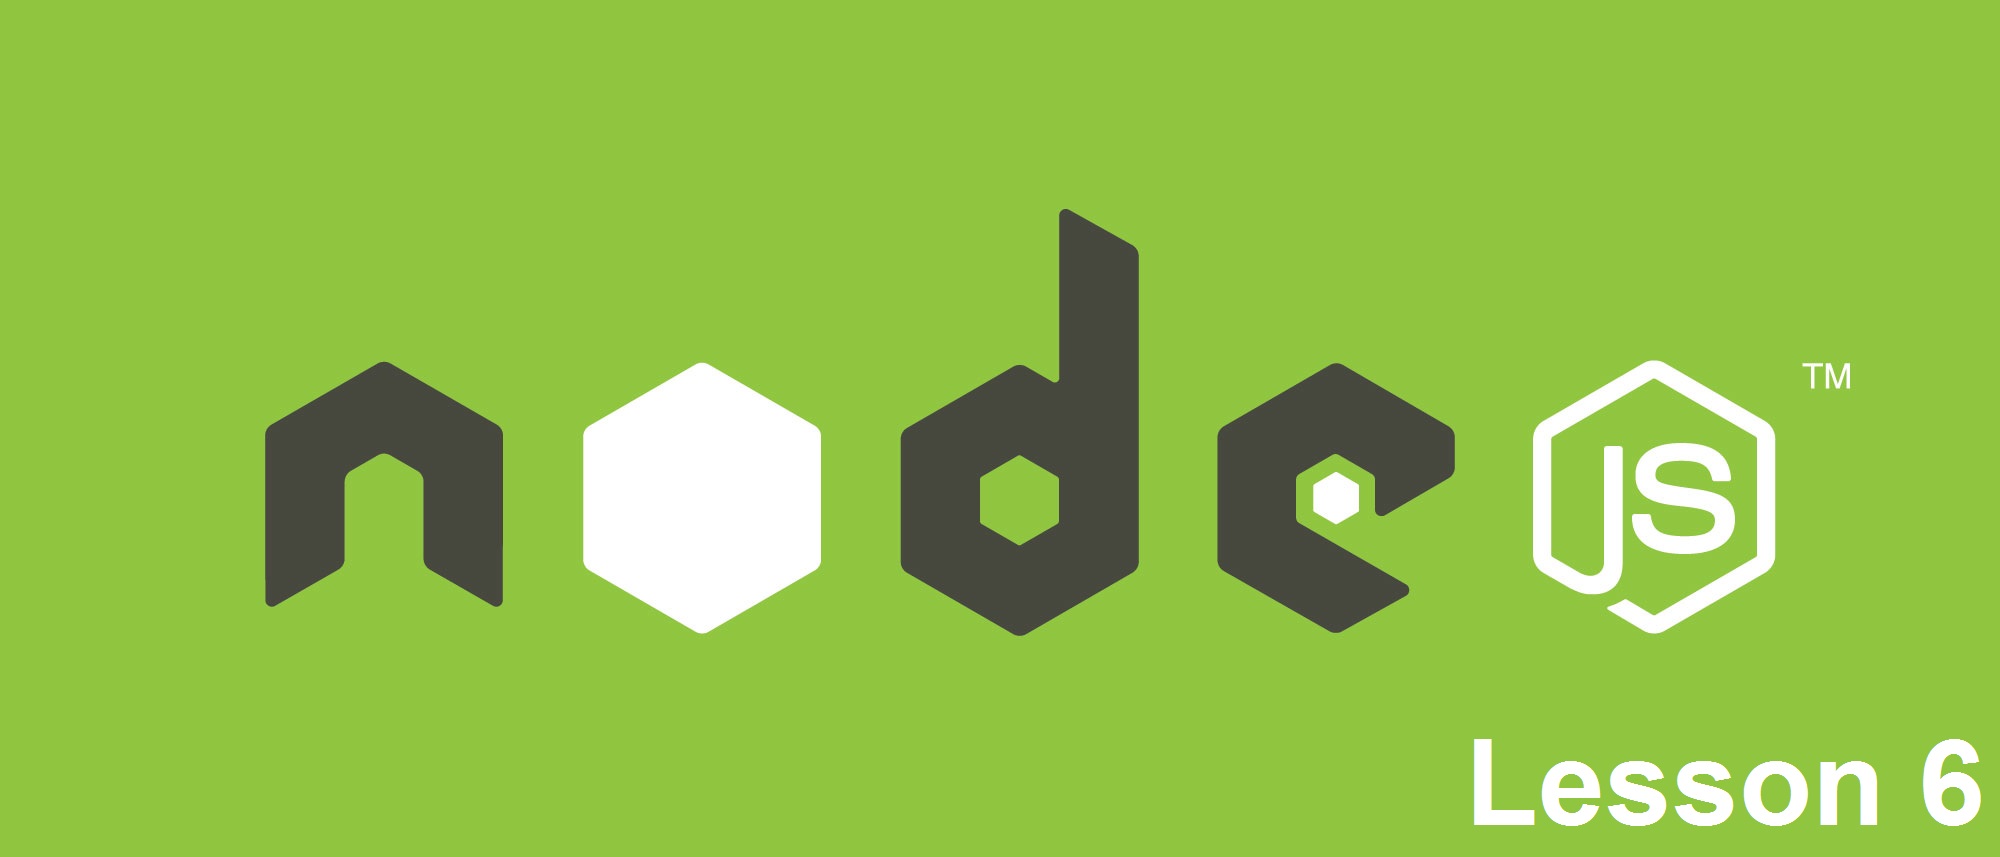 nodejs_logo_green